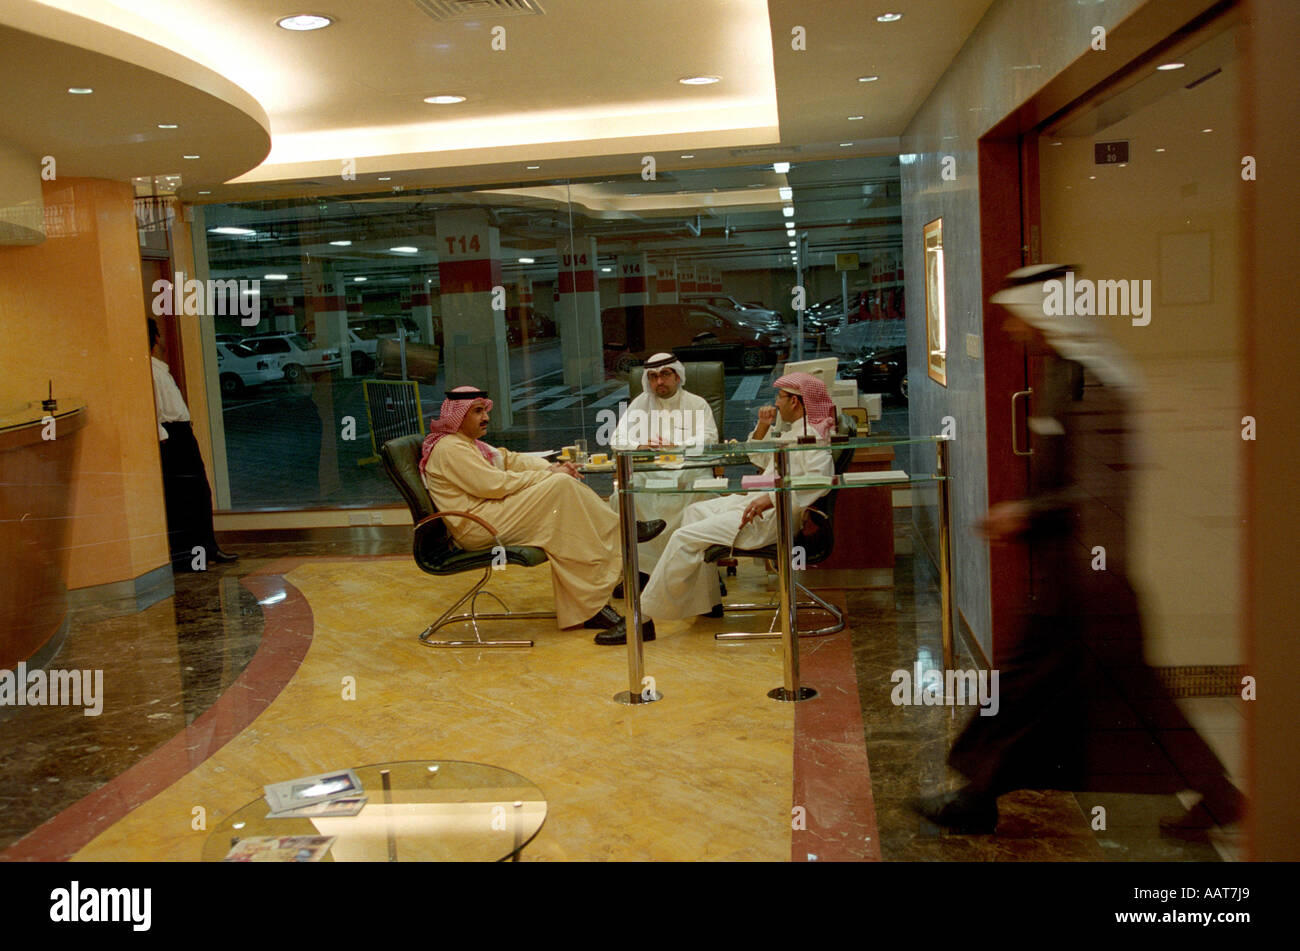 Tun des Geschäfts in der Schamil islamische Bank-Filiale in einem Einkaufszentrum in zentralen Manama Bahrain Stockfoto